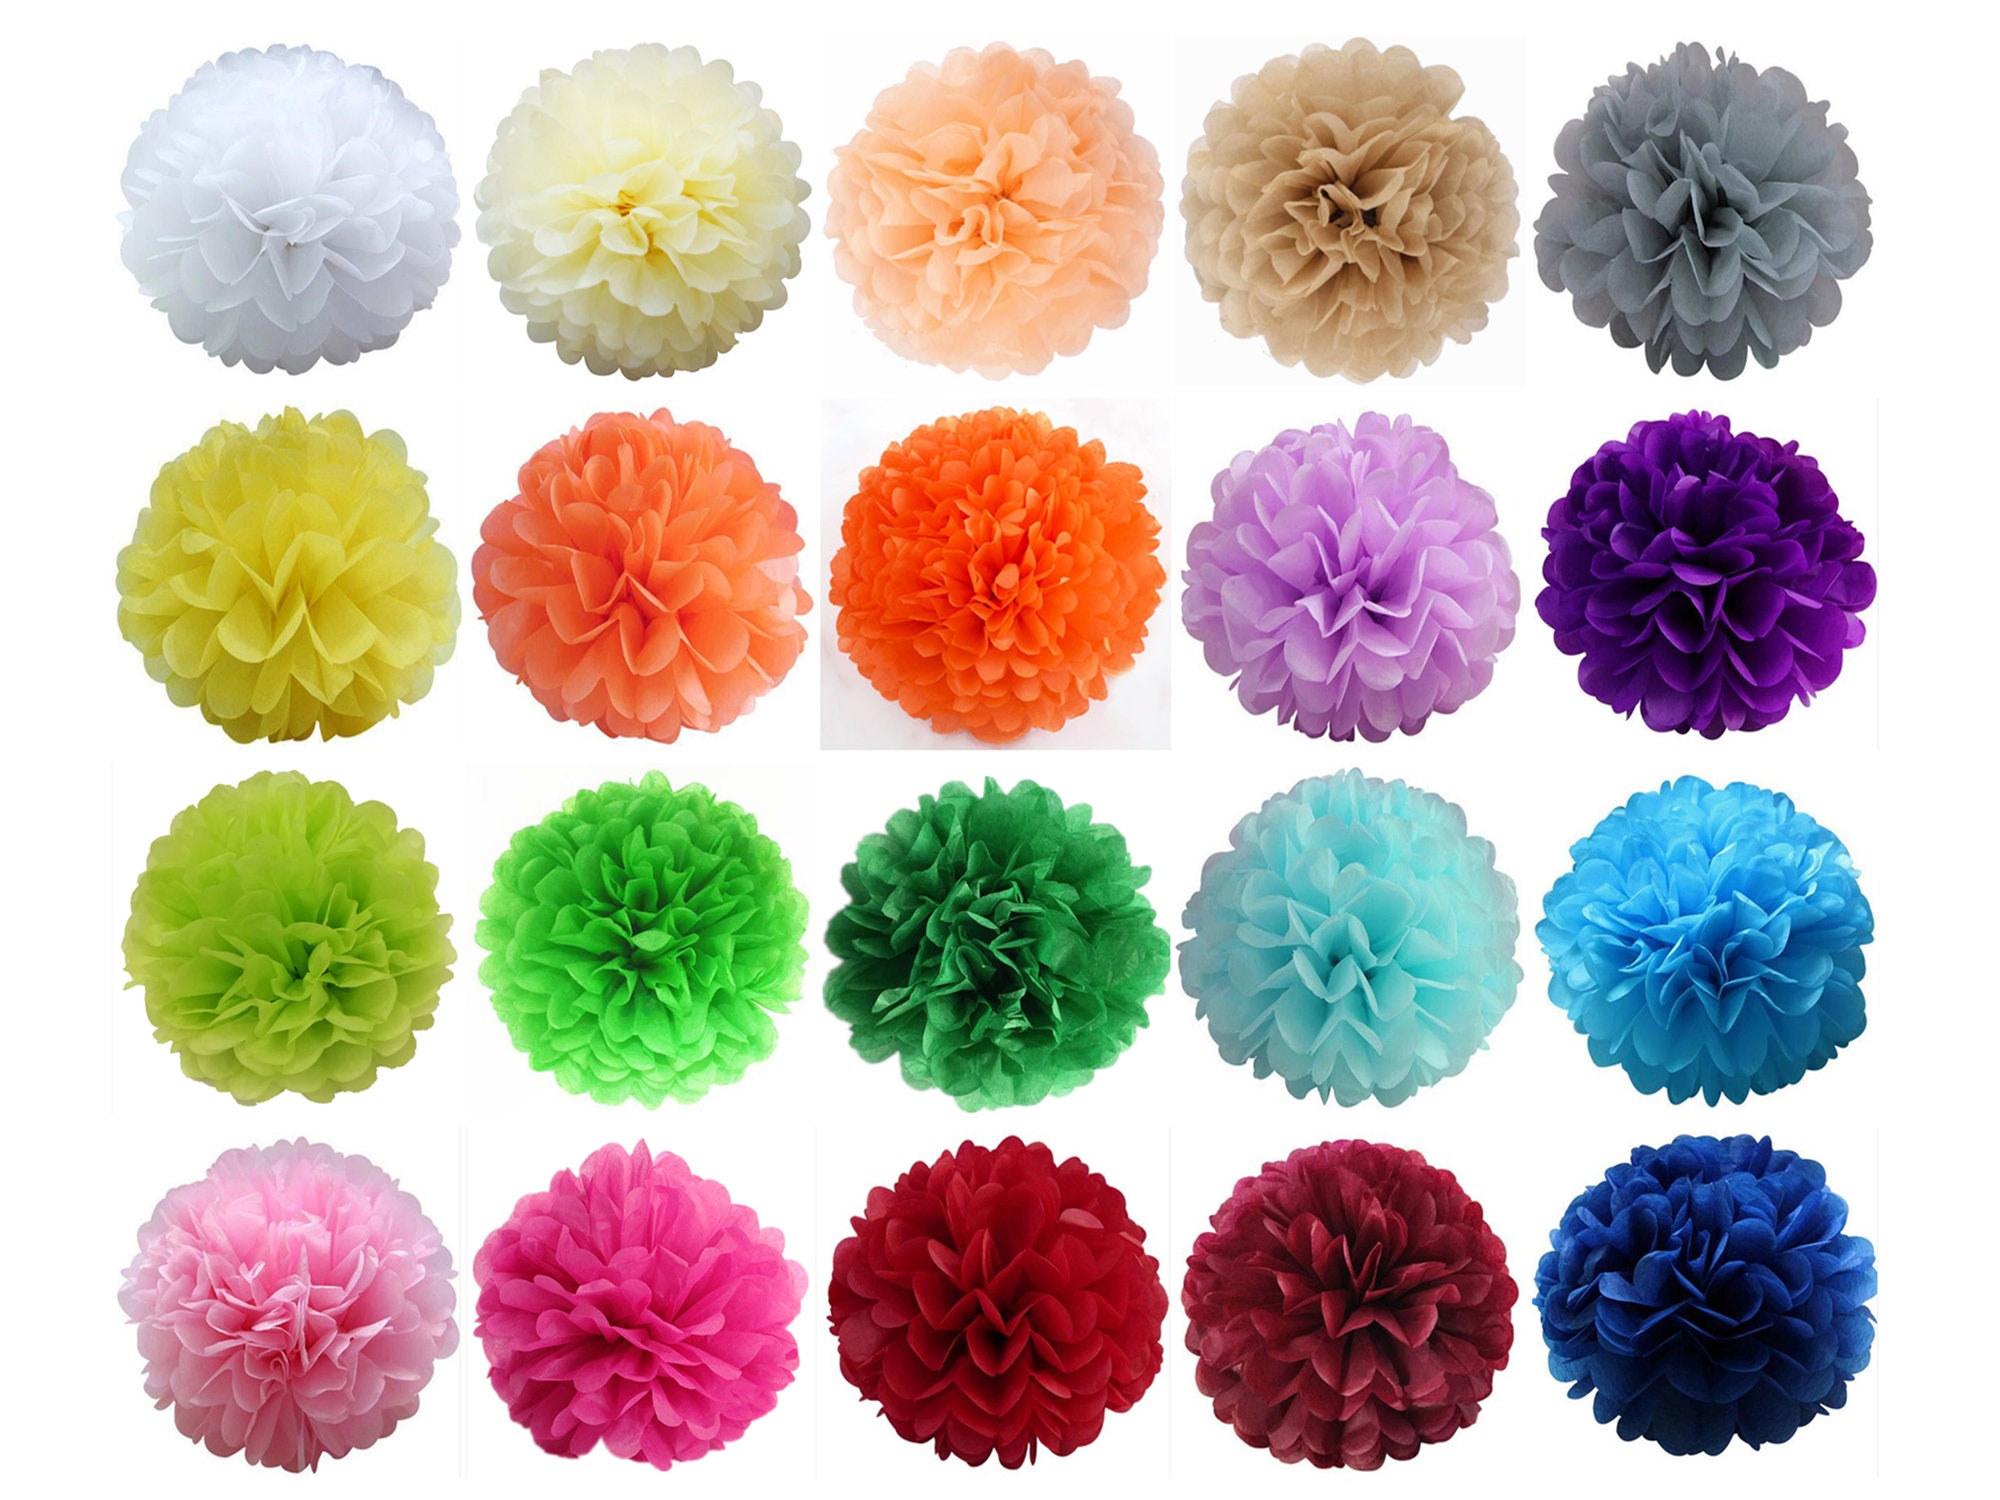 10 Tissue Paper Pom Poms tissue Flower Balls |